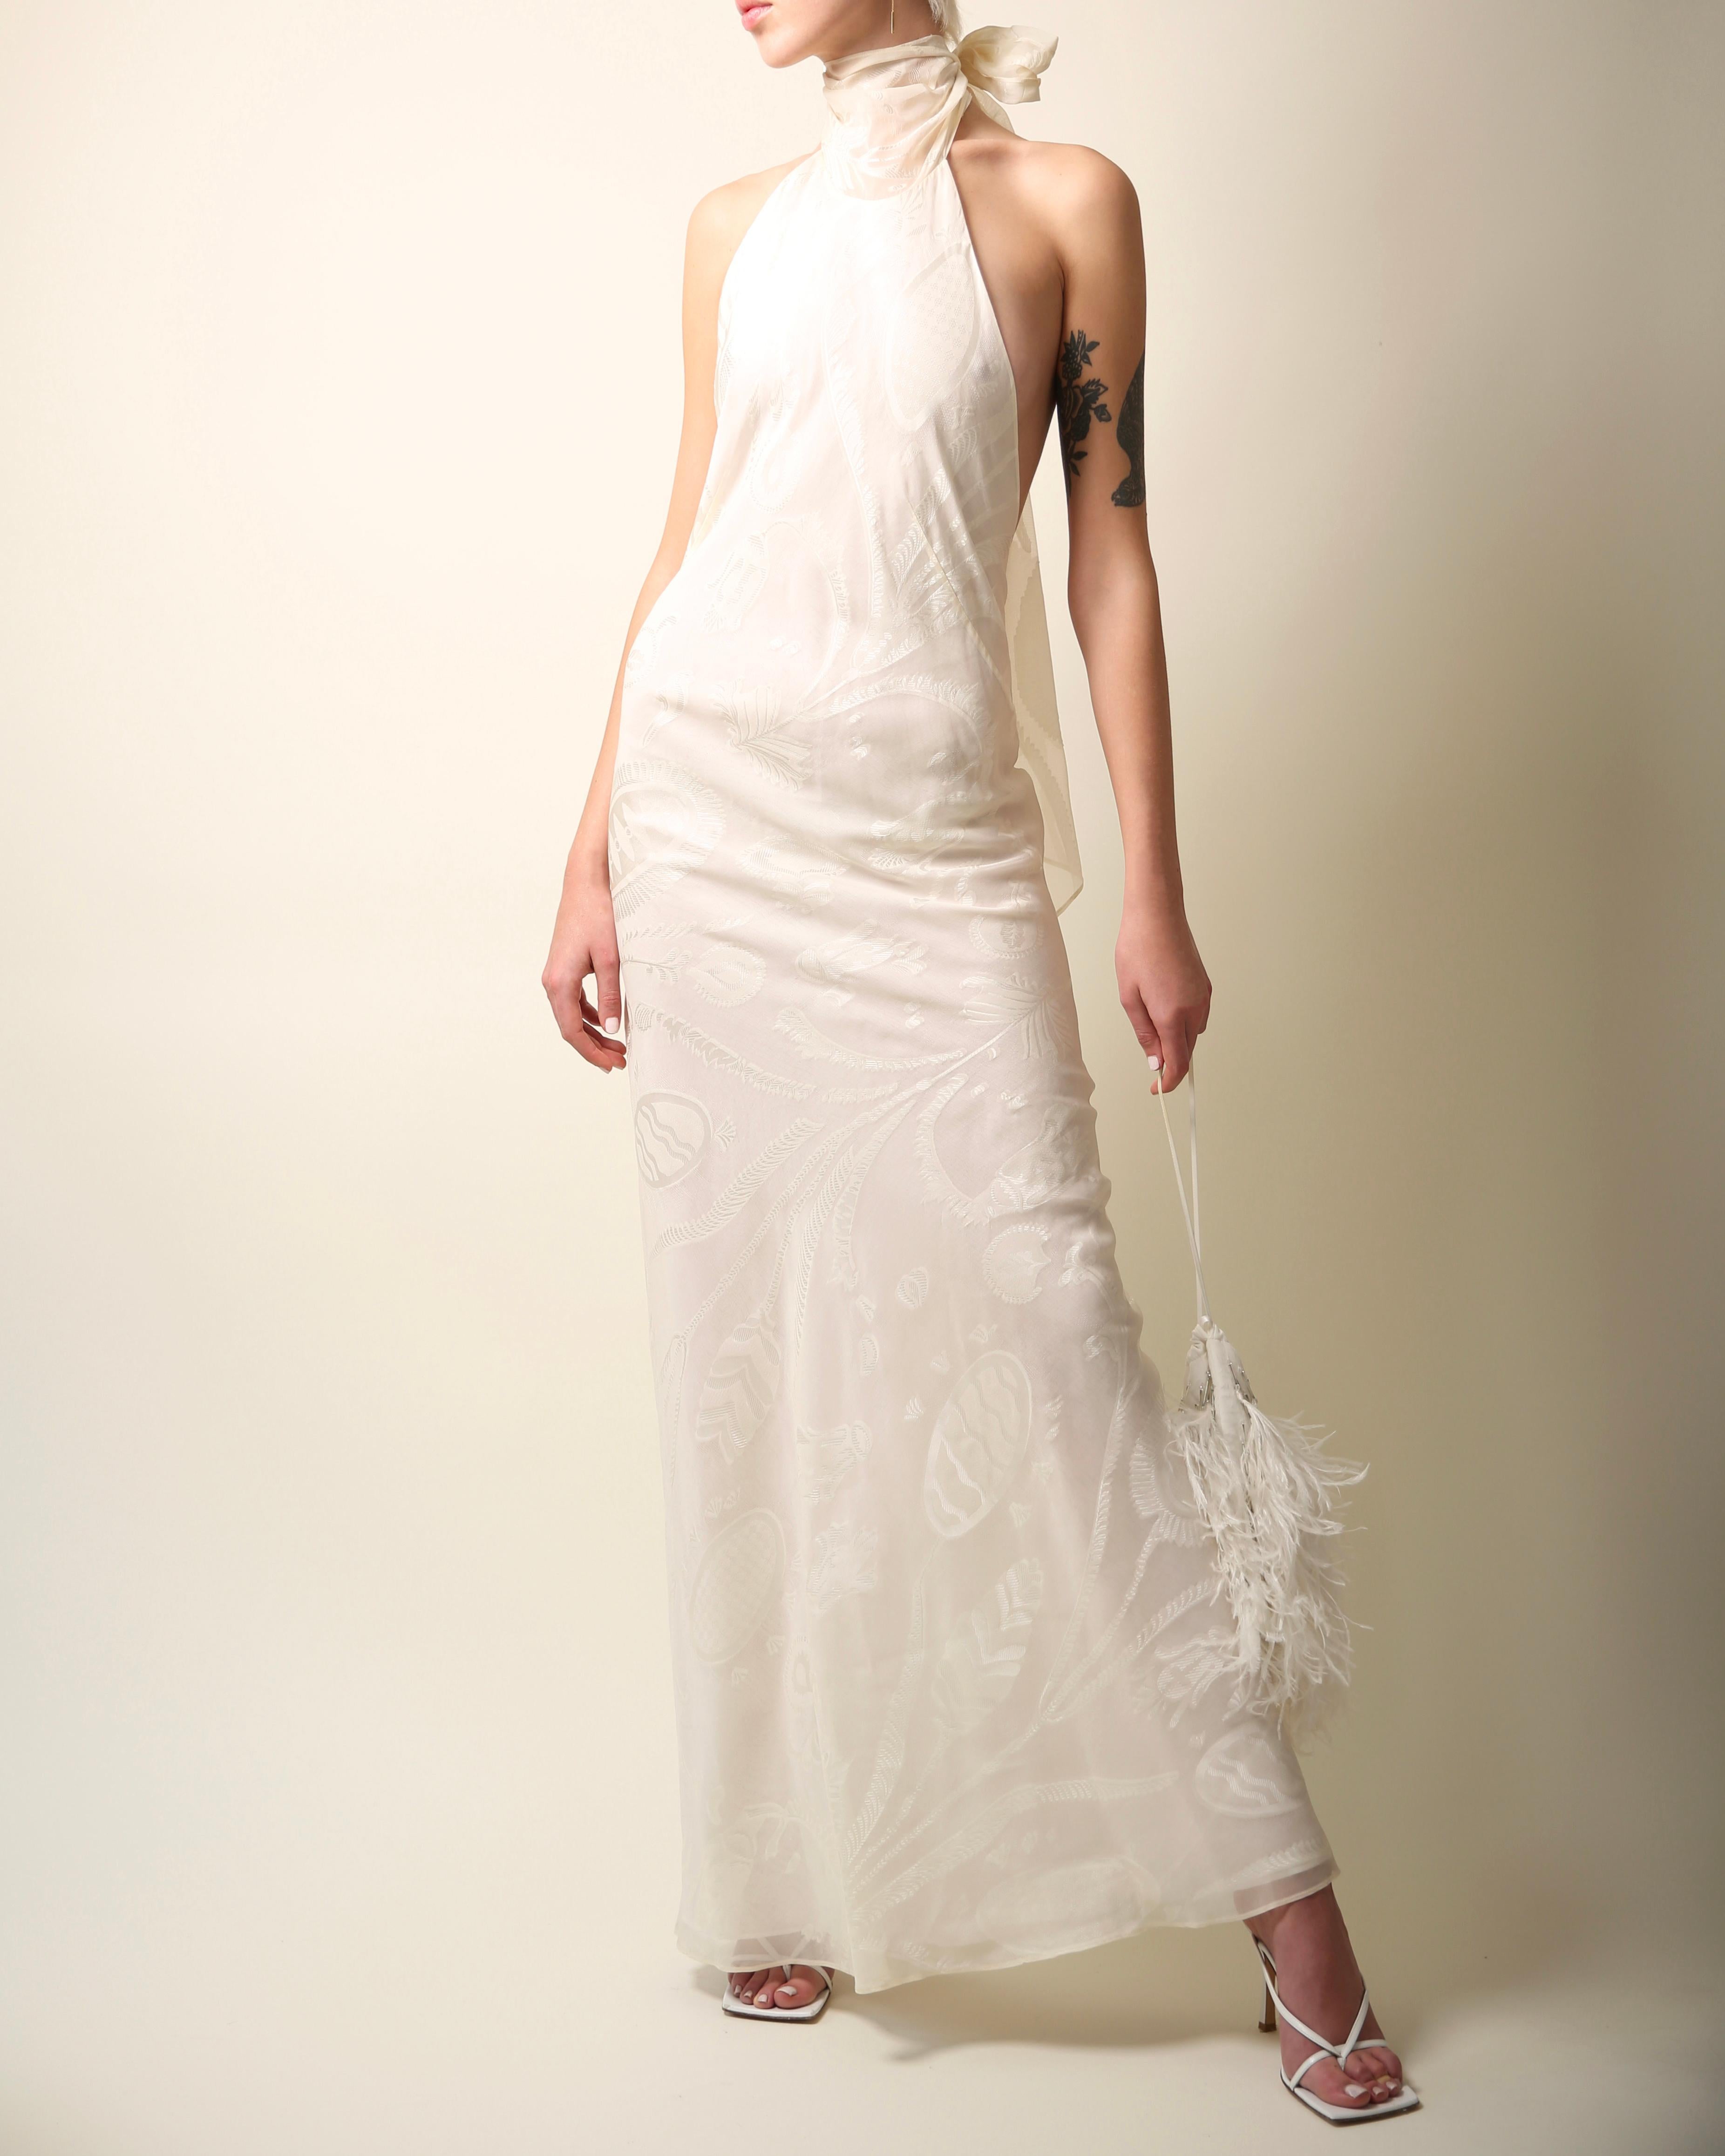 Emilio Pucci Vintage-Seidenkleid in Elfenbein aus der Laufstegkollektion Frühjahr 2001 
Dieses Kleid besteht aus zwei miteinander verbundenen Schichten. Die äußere Schicht besteht aus einem durchsichtigen Seidenüberzug mit botanischem Druck und dem